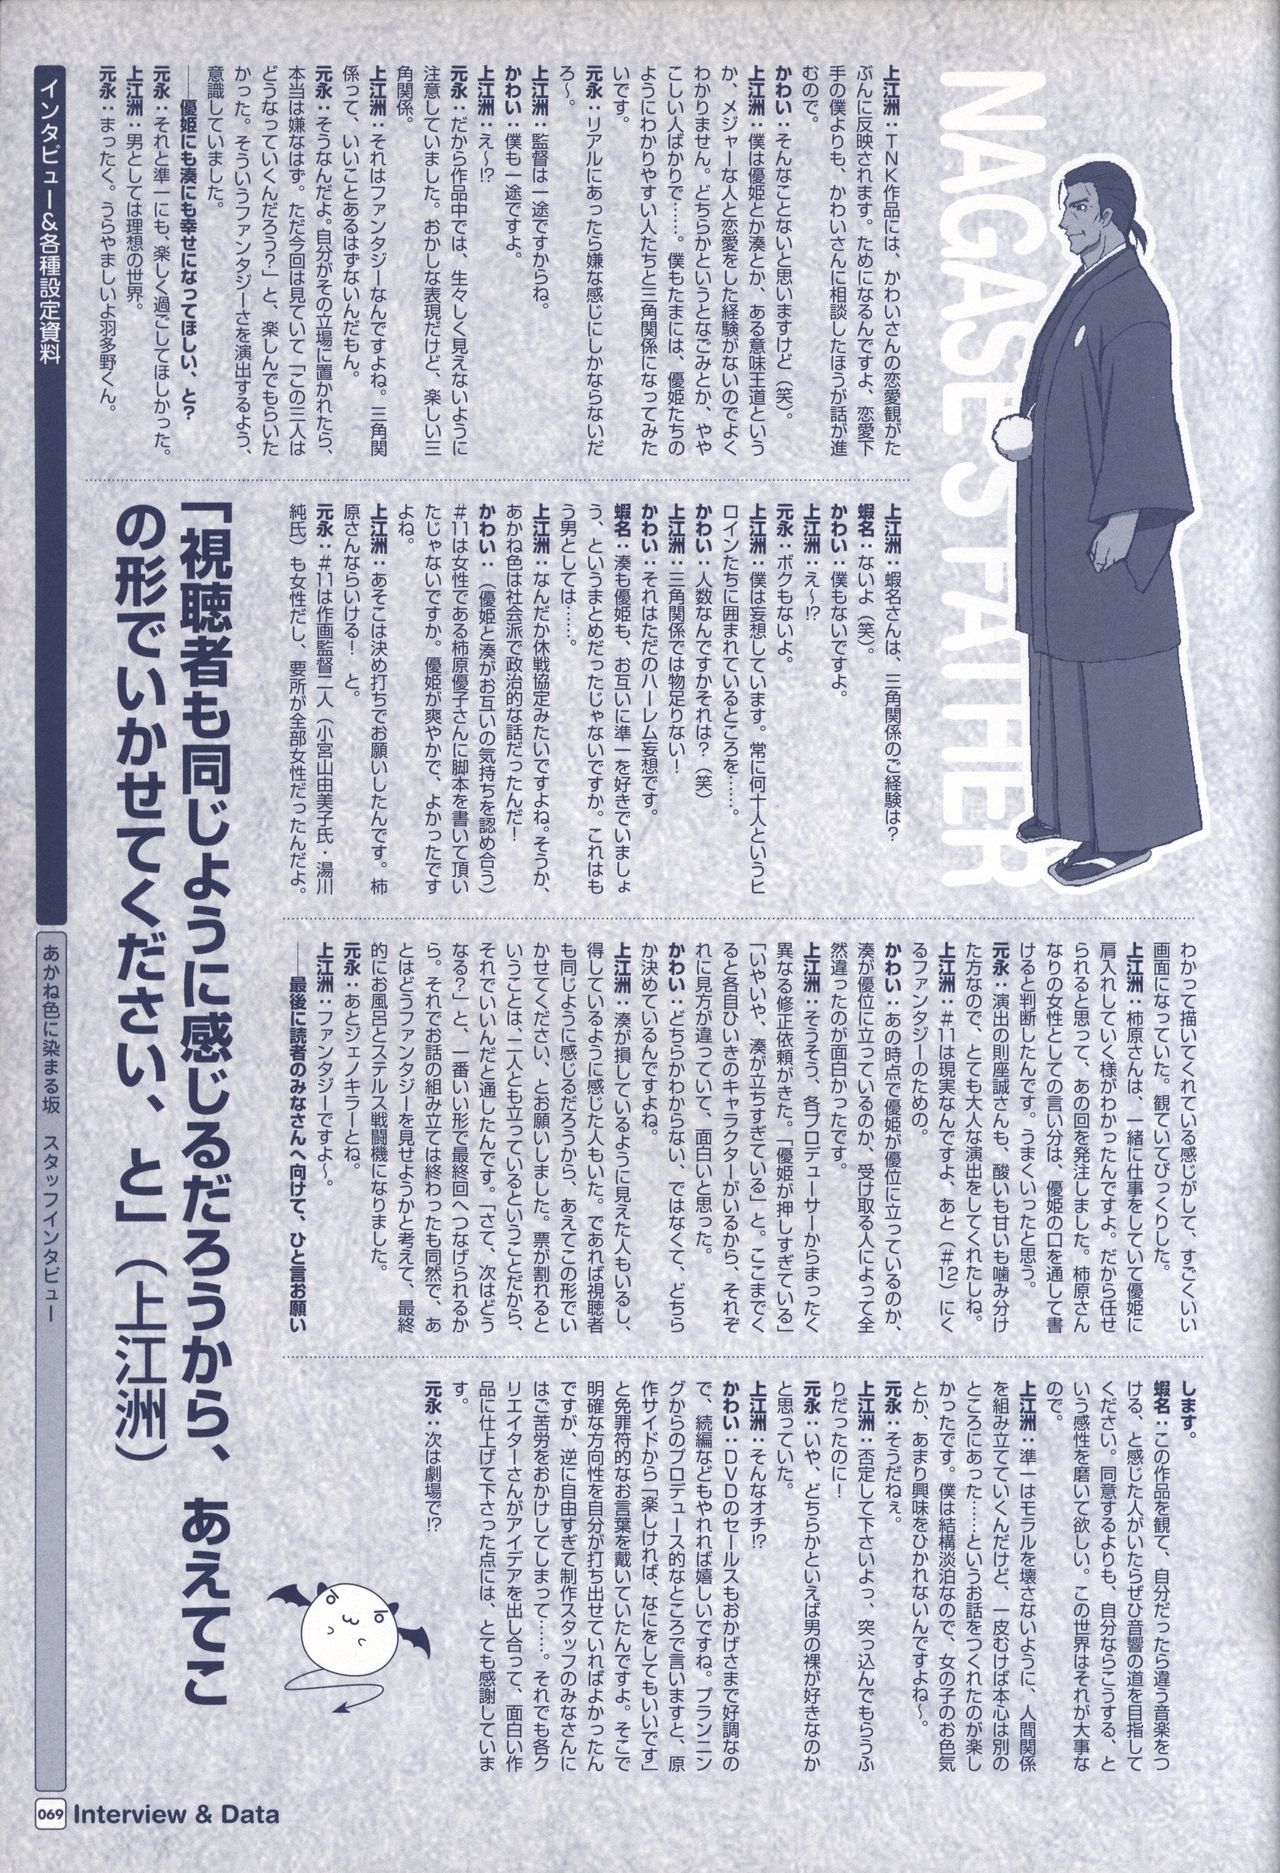 TV ANIME Akaneiro ni Somaru Saka Visual Guide Book 69